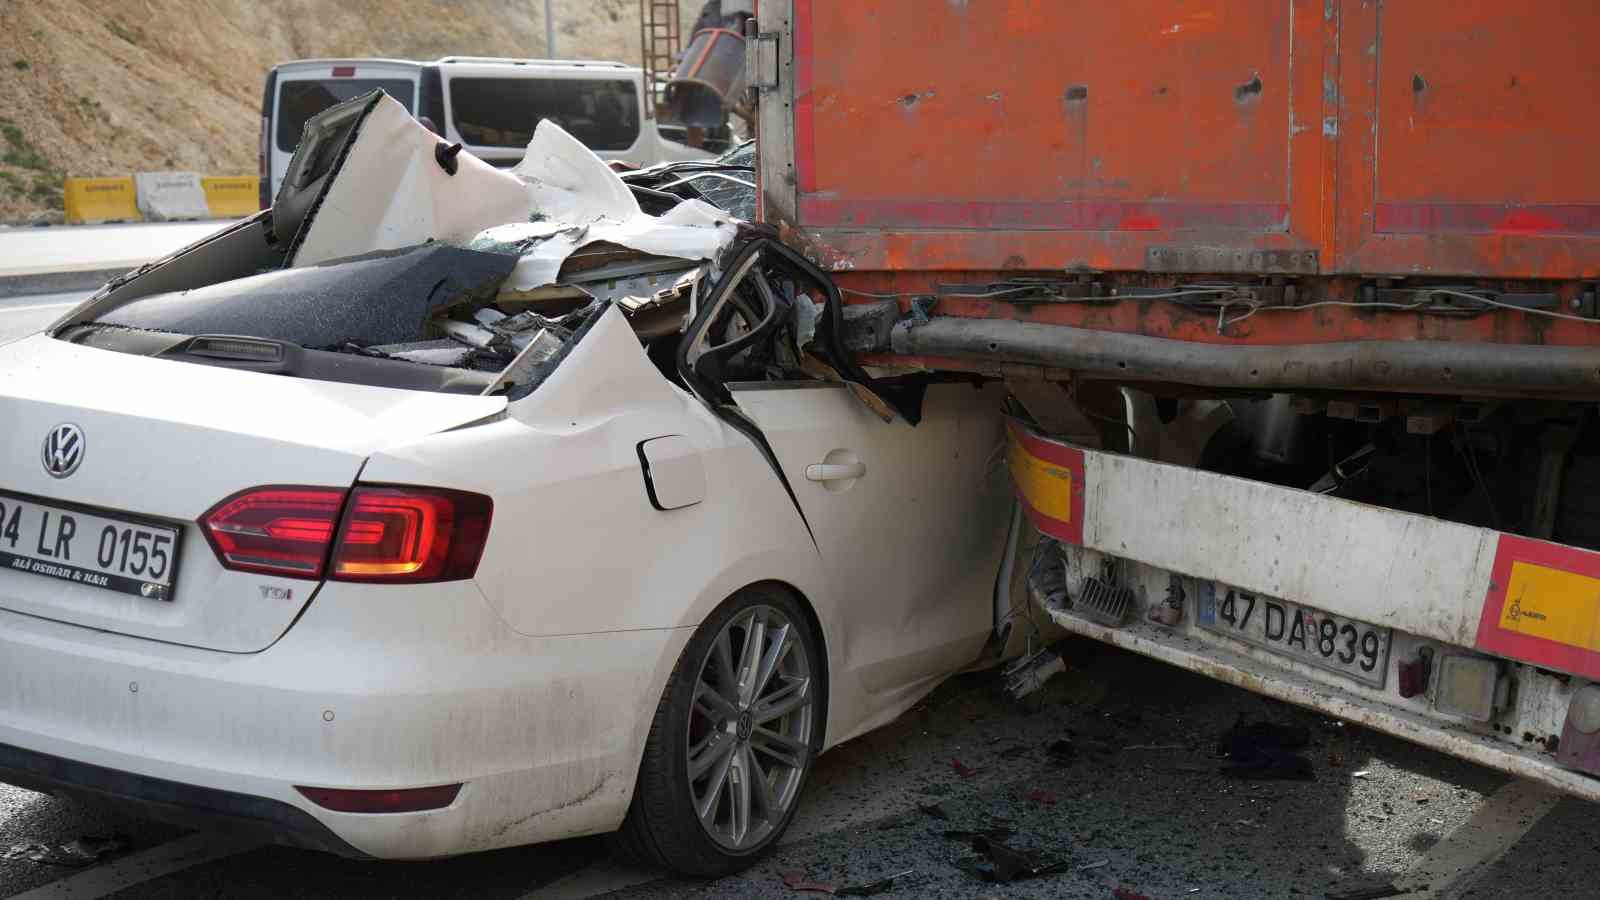 Arnavutköy’de kontrolden çıkan otomobil otoyolda duran tıra çarptı: 2 yaralı
